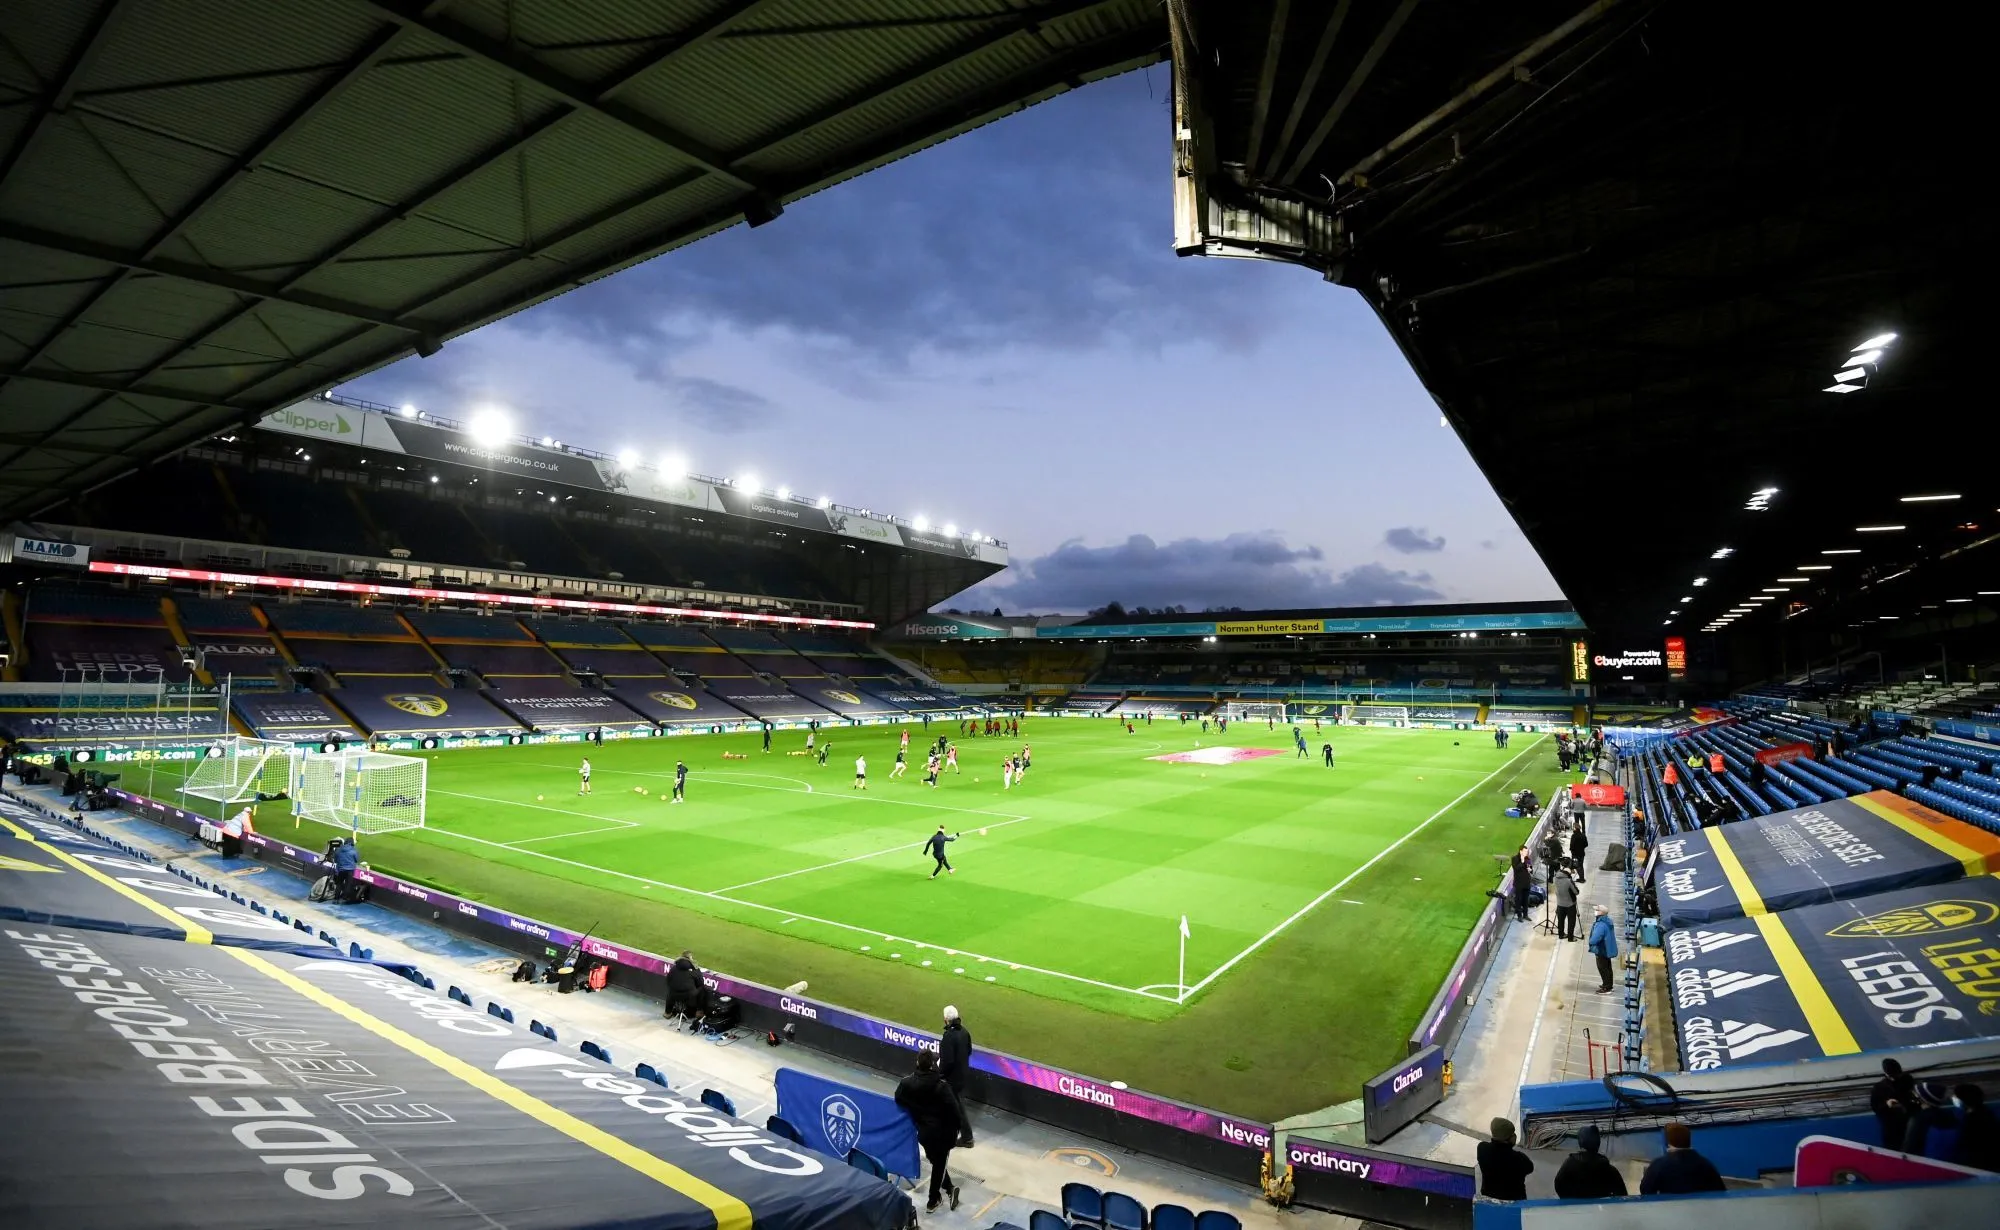 Leeds renomme une des tribunes de son stade Jack Charlton